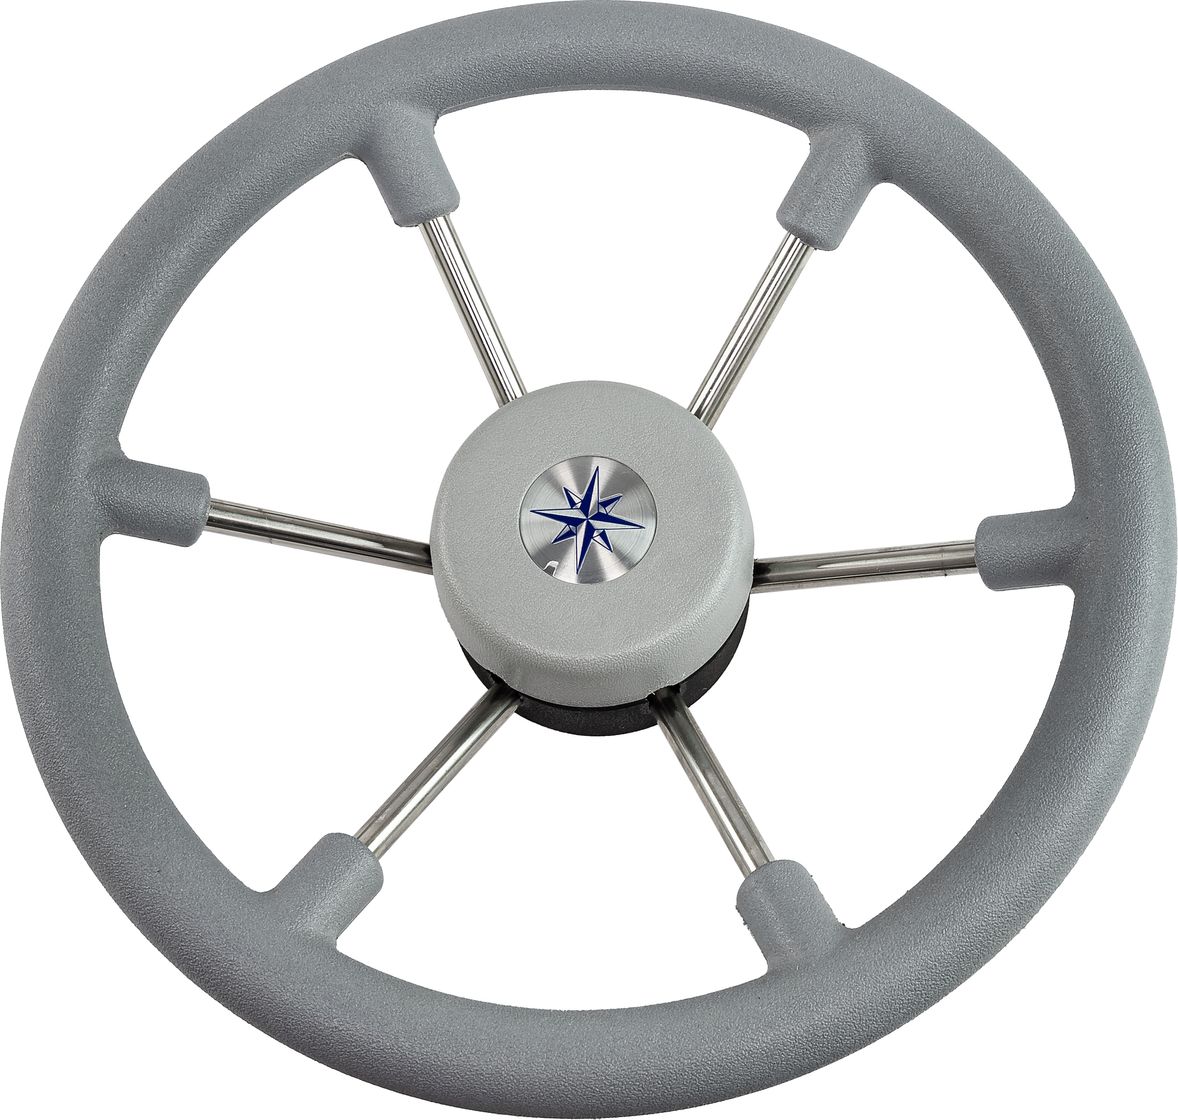 Рулевое колесо LEADER TANEGUM серый обод серебряные спицы д. 330 мм VN7330-03 рулевое колесо leader tanegum белый обод серебряные спицы д 400 мм vn7400 08